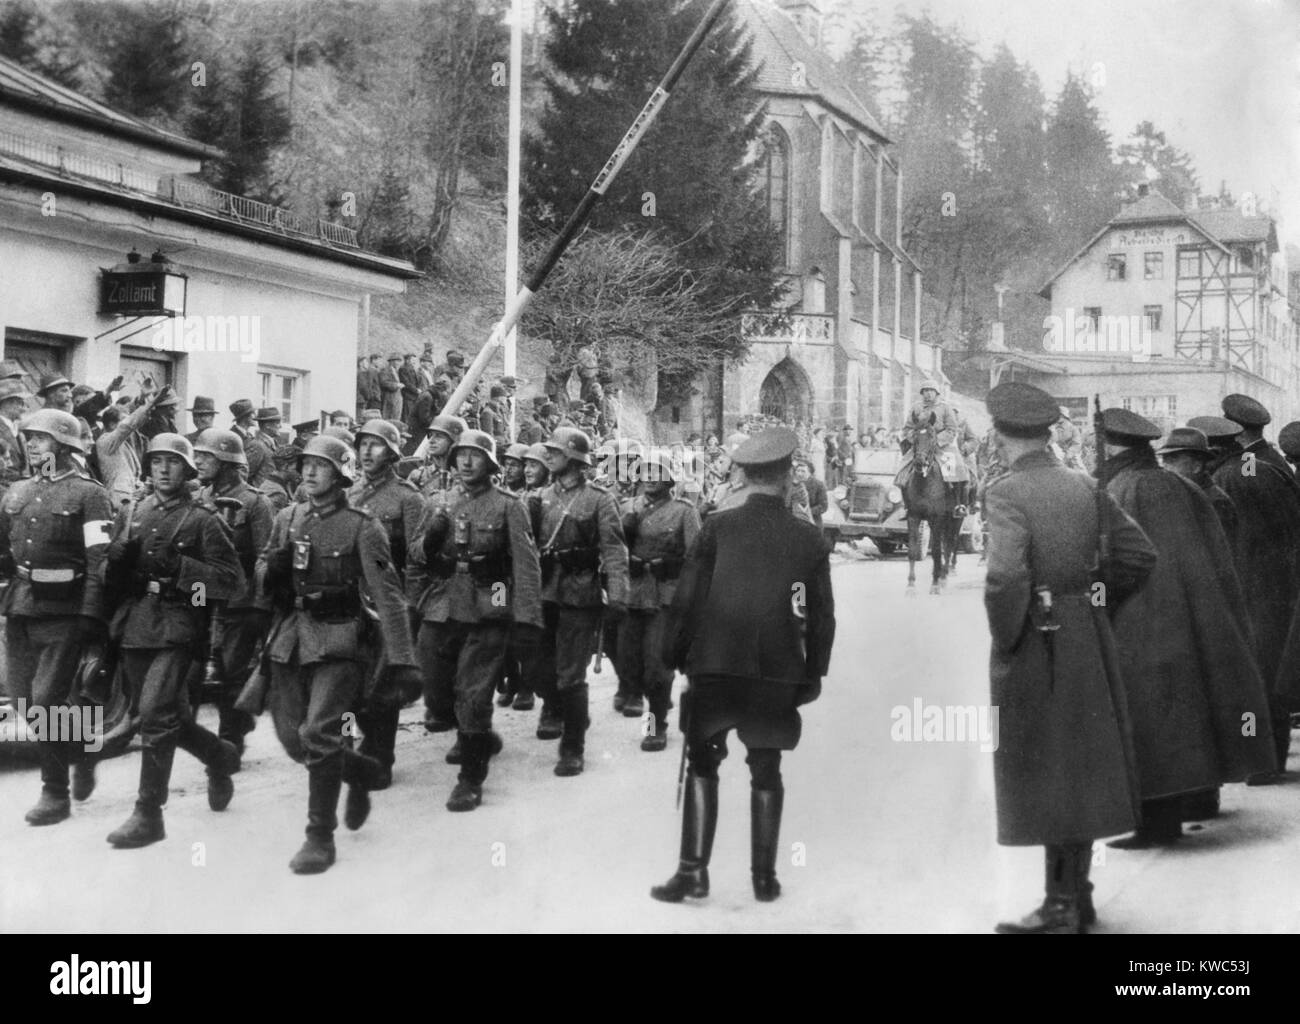 Les soldats allemands dans la ville de Kufstein-Kieferfelded Austria-German sur la frontière. Mars 1938. Le Gouvernement autrichien avait ordonné à l'armée autrichienne de ne pas résister. (BSLOC   2015 13 28) Banque D'Images